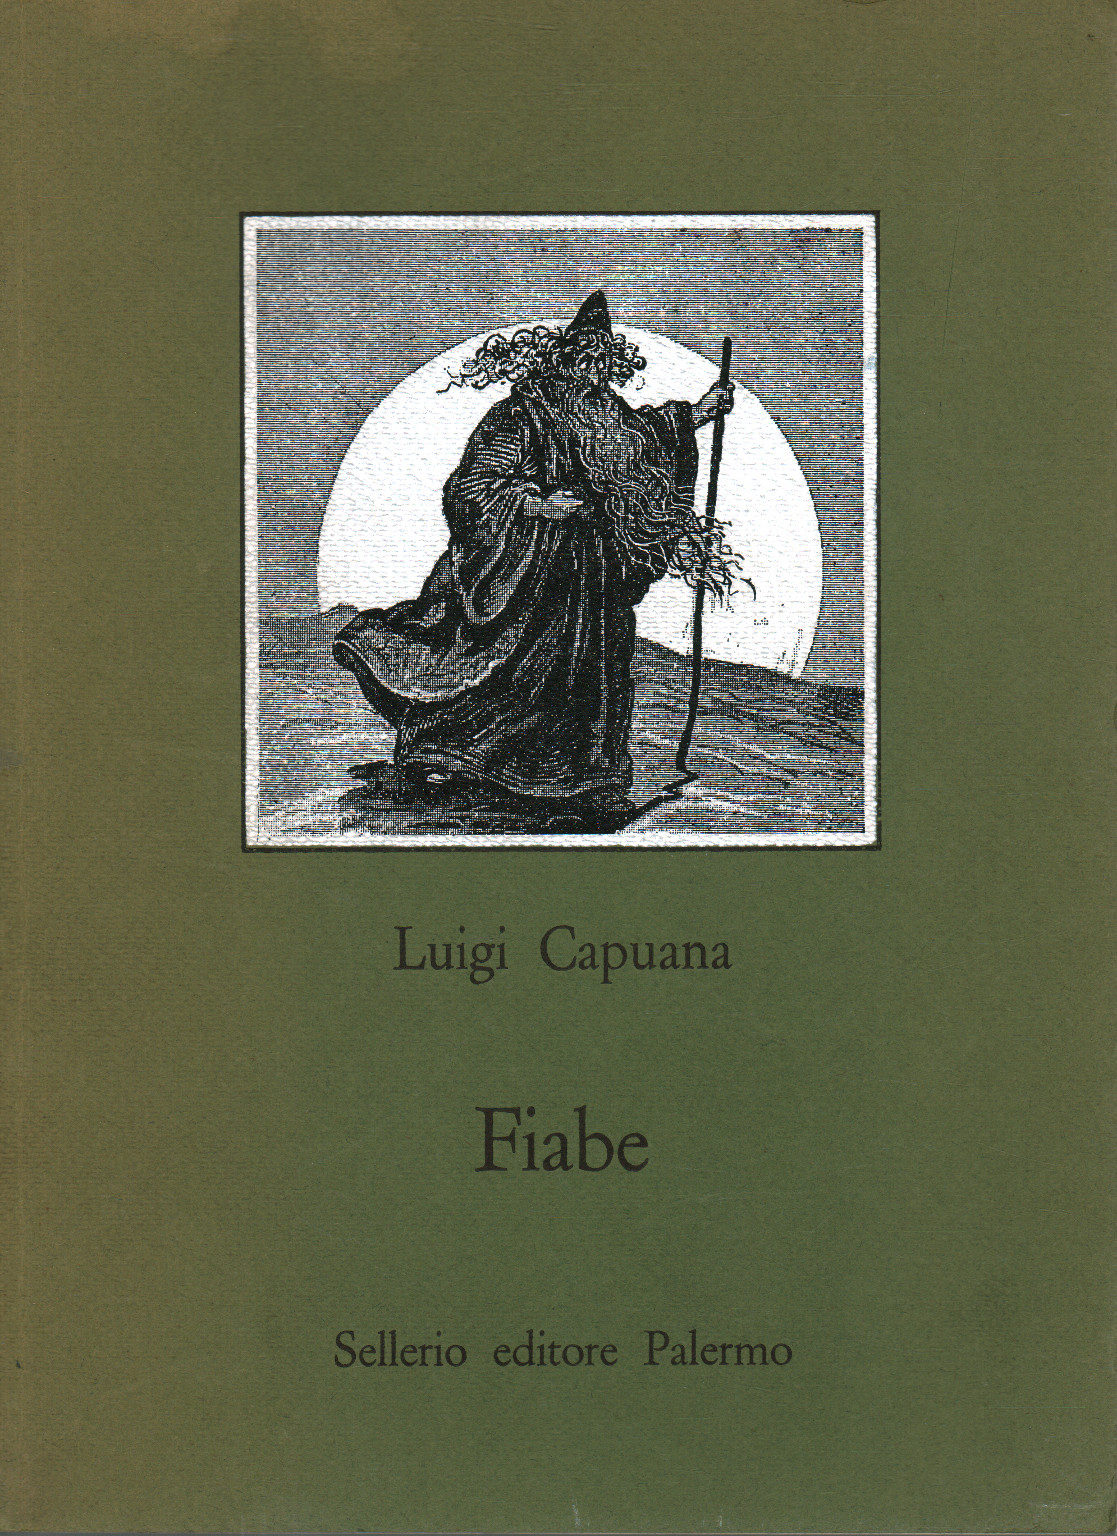 Contes de fées, Luigi Capuana